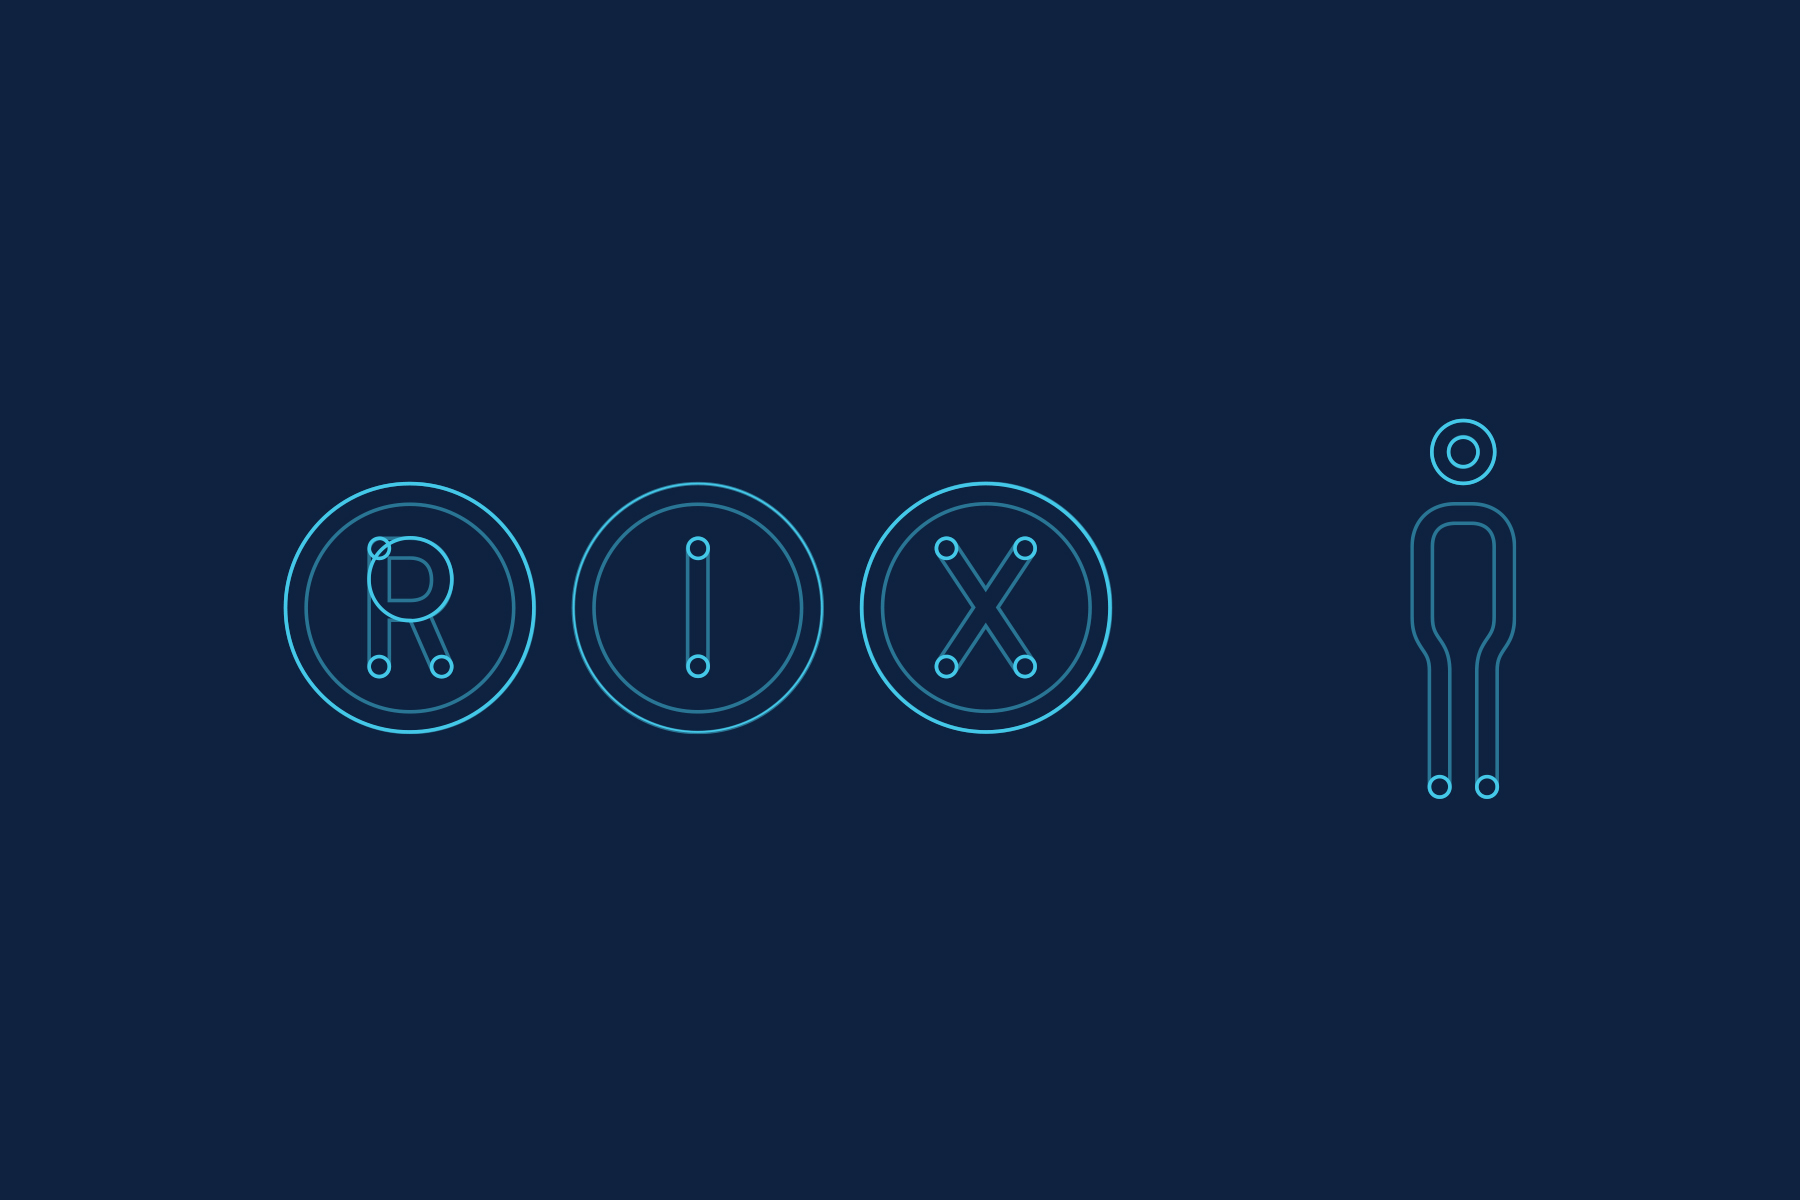 rix_logo_symbols_1